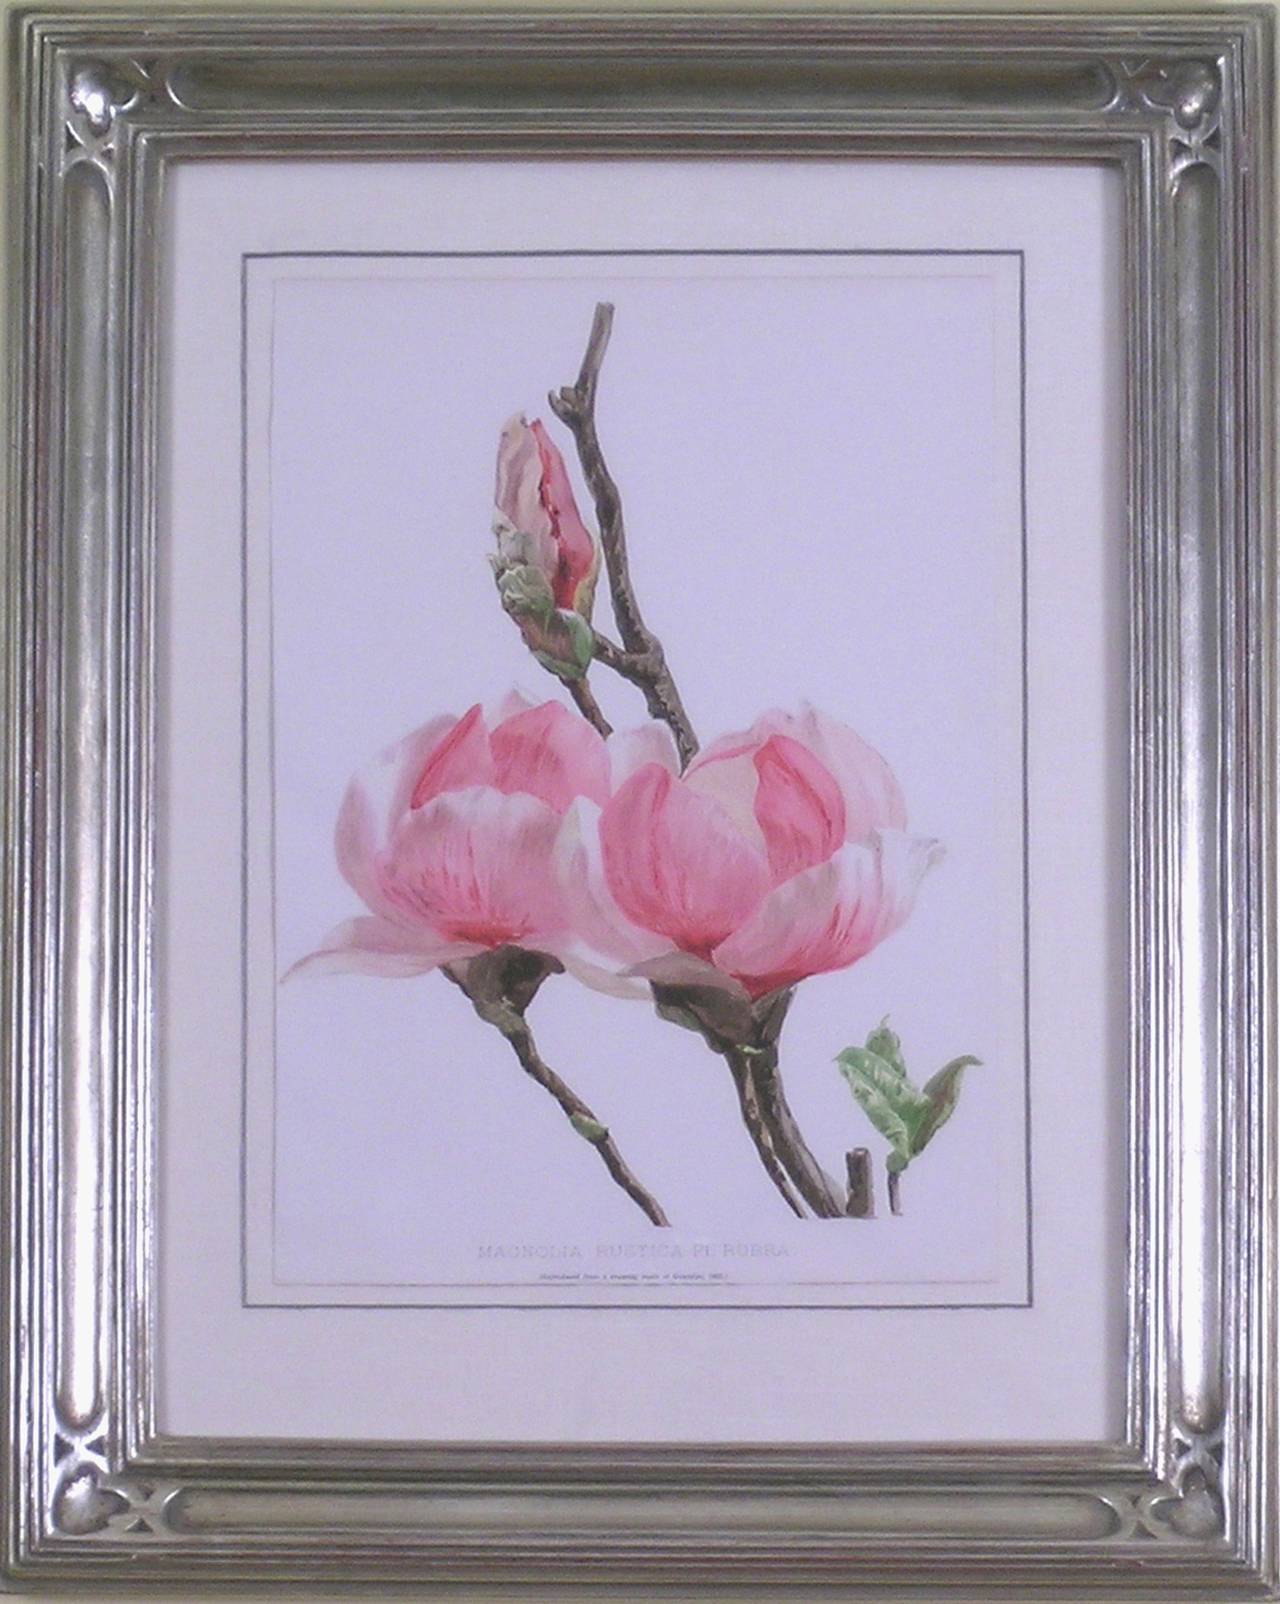 Magnolia Rustica Rubra - Print by Henry George Moon